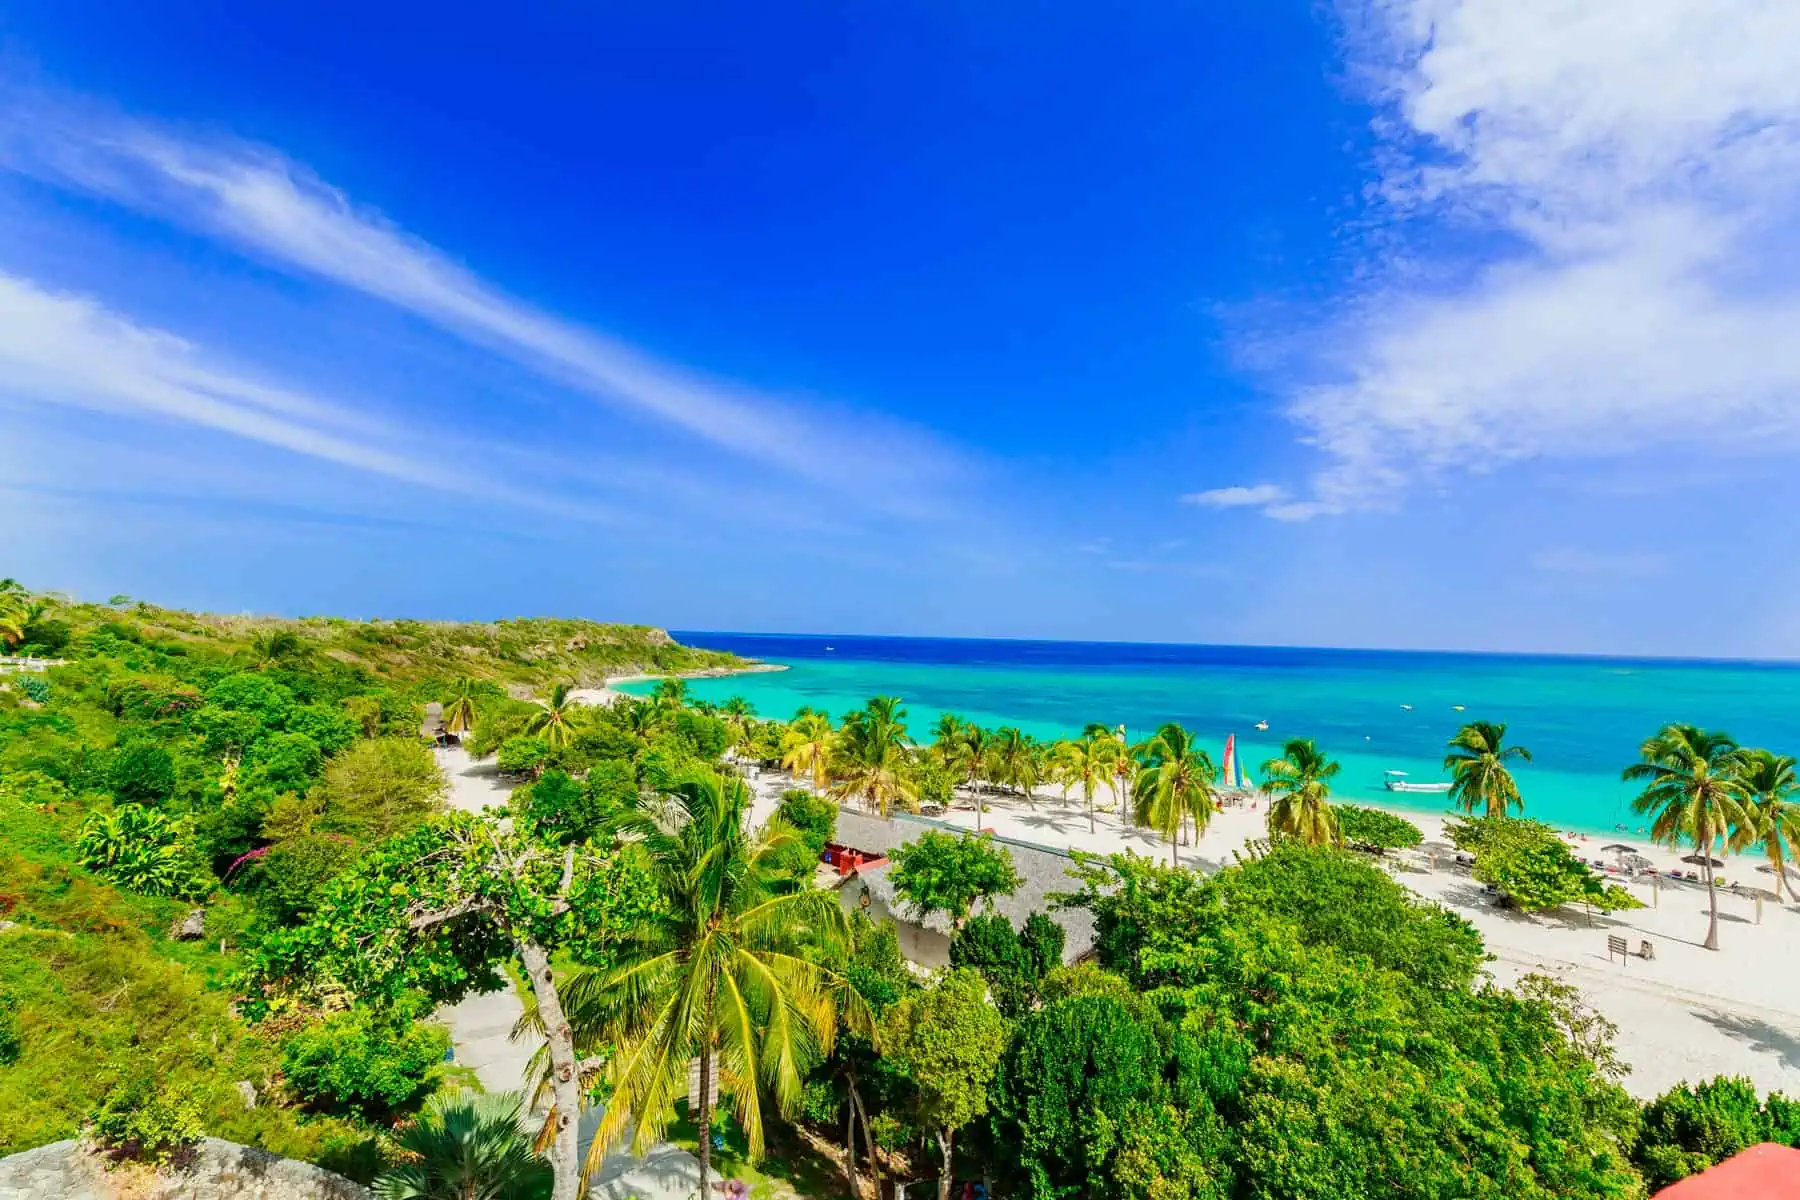 Oferta de Excursion Turística a Playa Guardalavaca con Havanatur Julio 2023